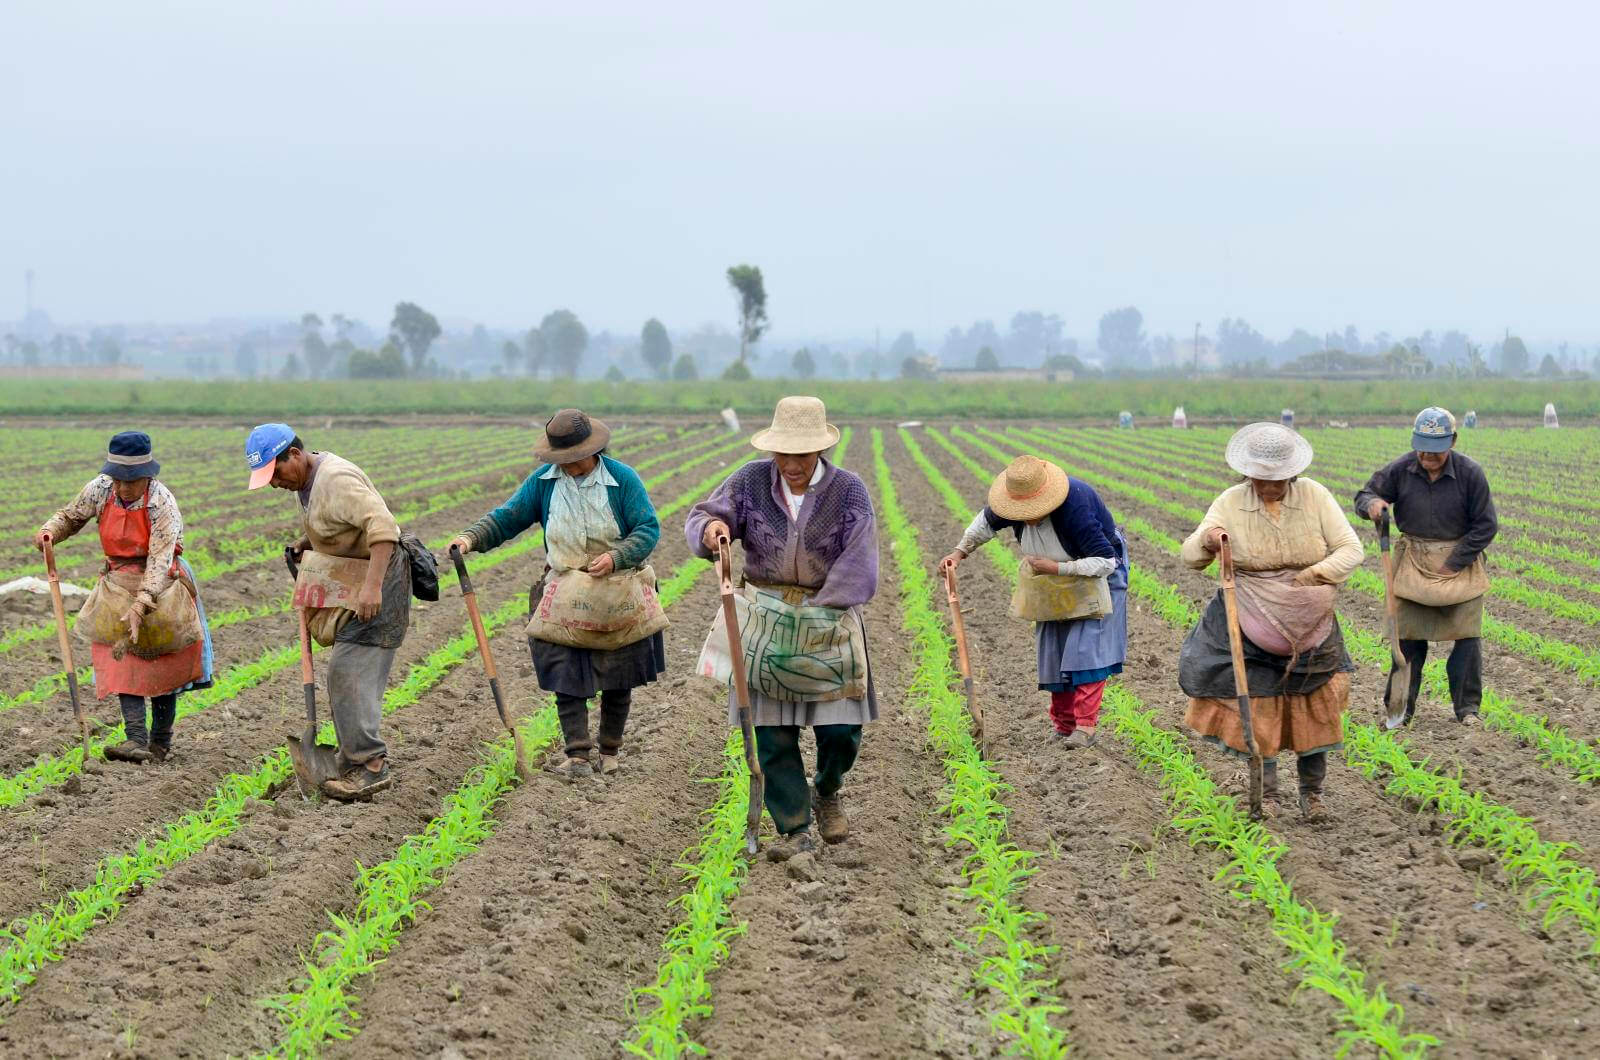 La modificación genética en América Latina convierte a América en líder mundial en innovación agrícola